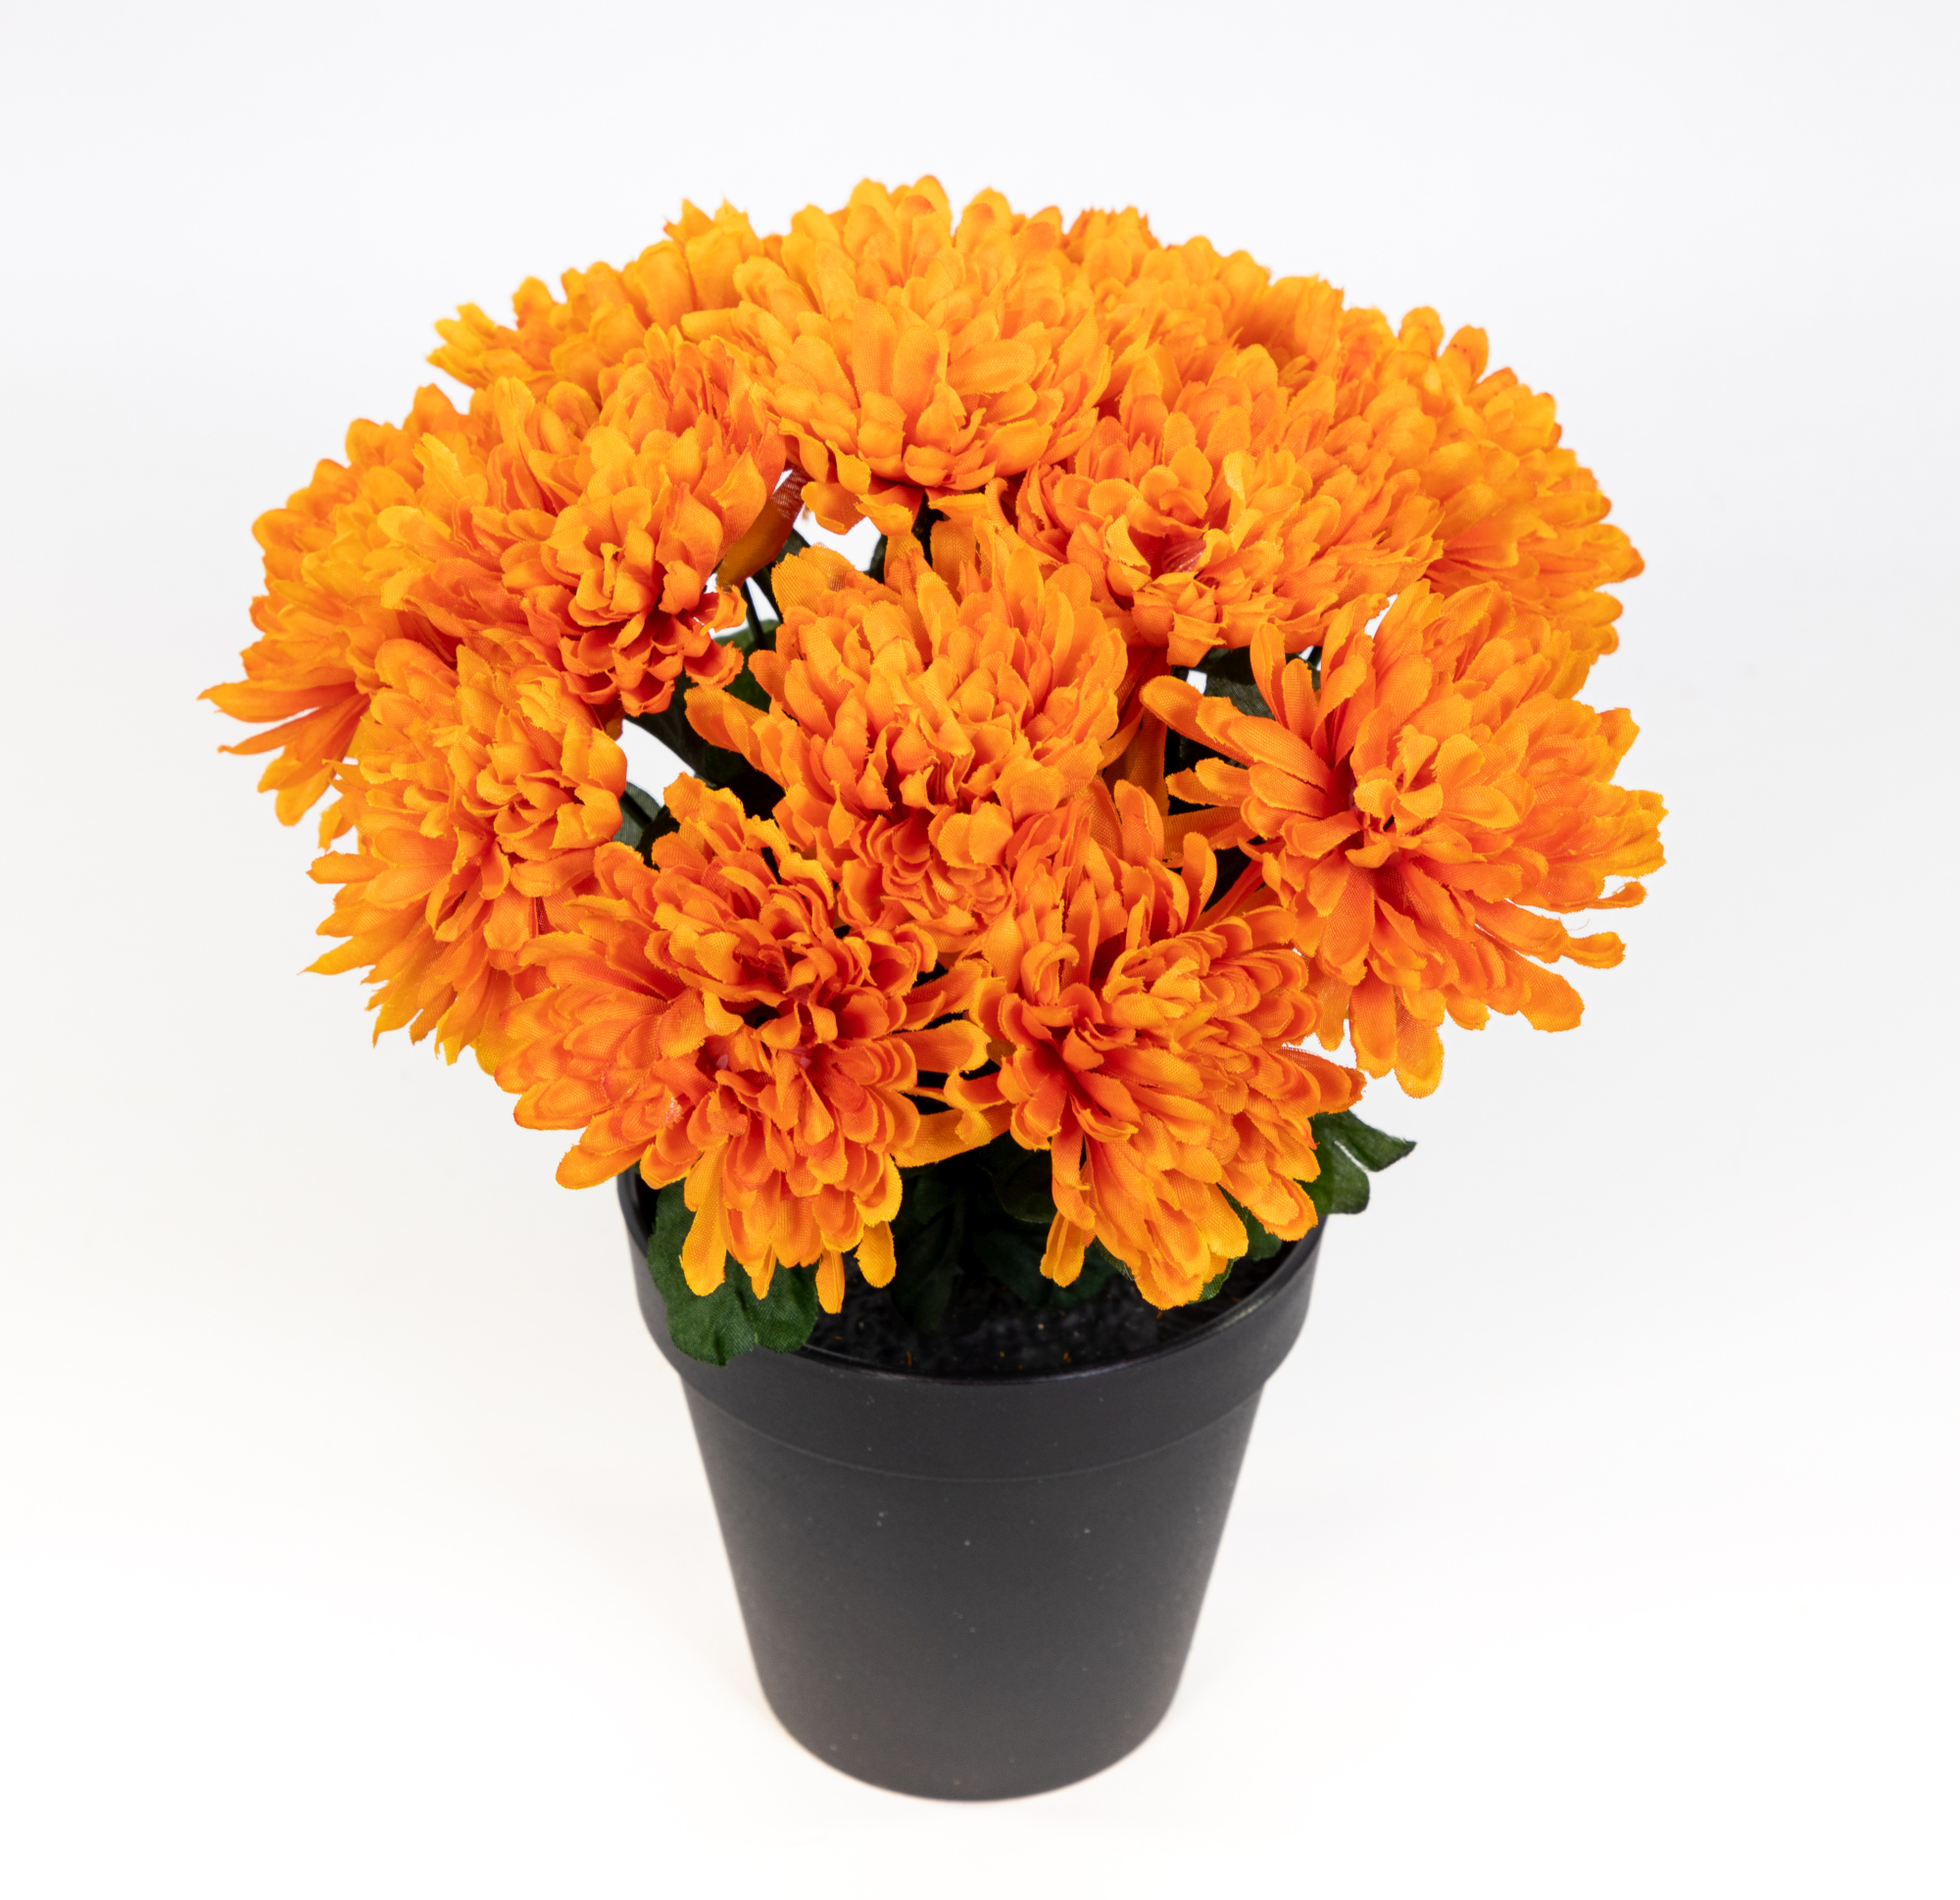 Chrysantheme 26cm orange im Topf DP Kunstpflanzen künstliche Pflanzen Blumen Kunstblumen